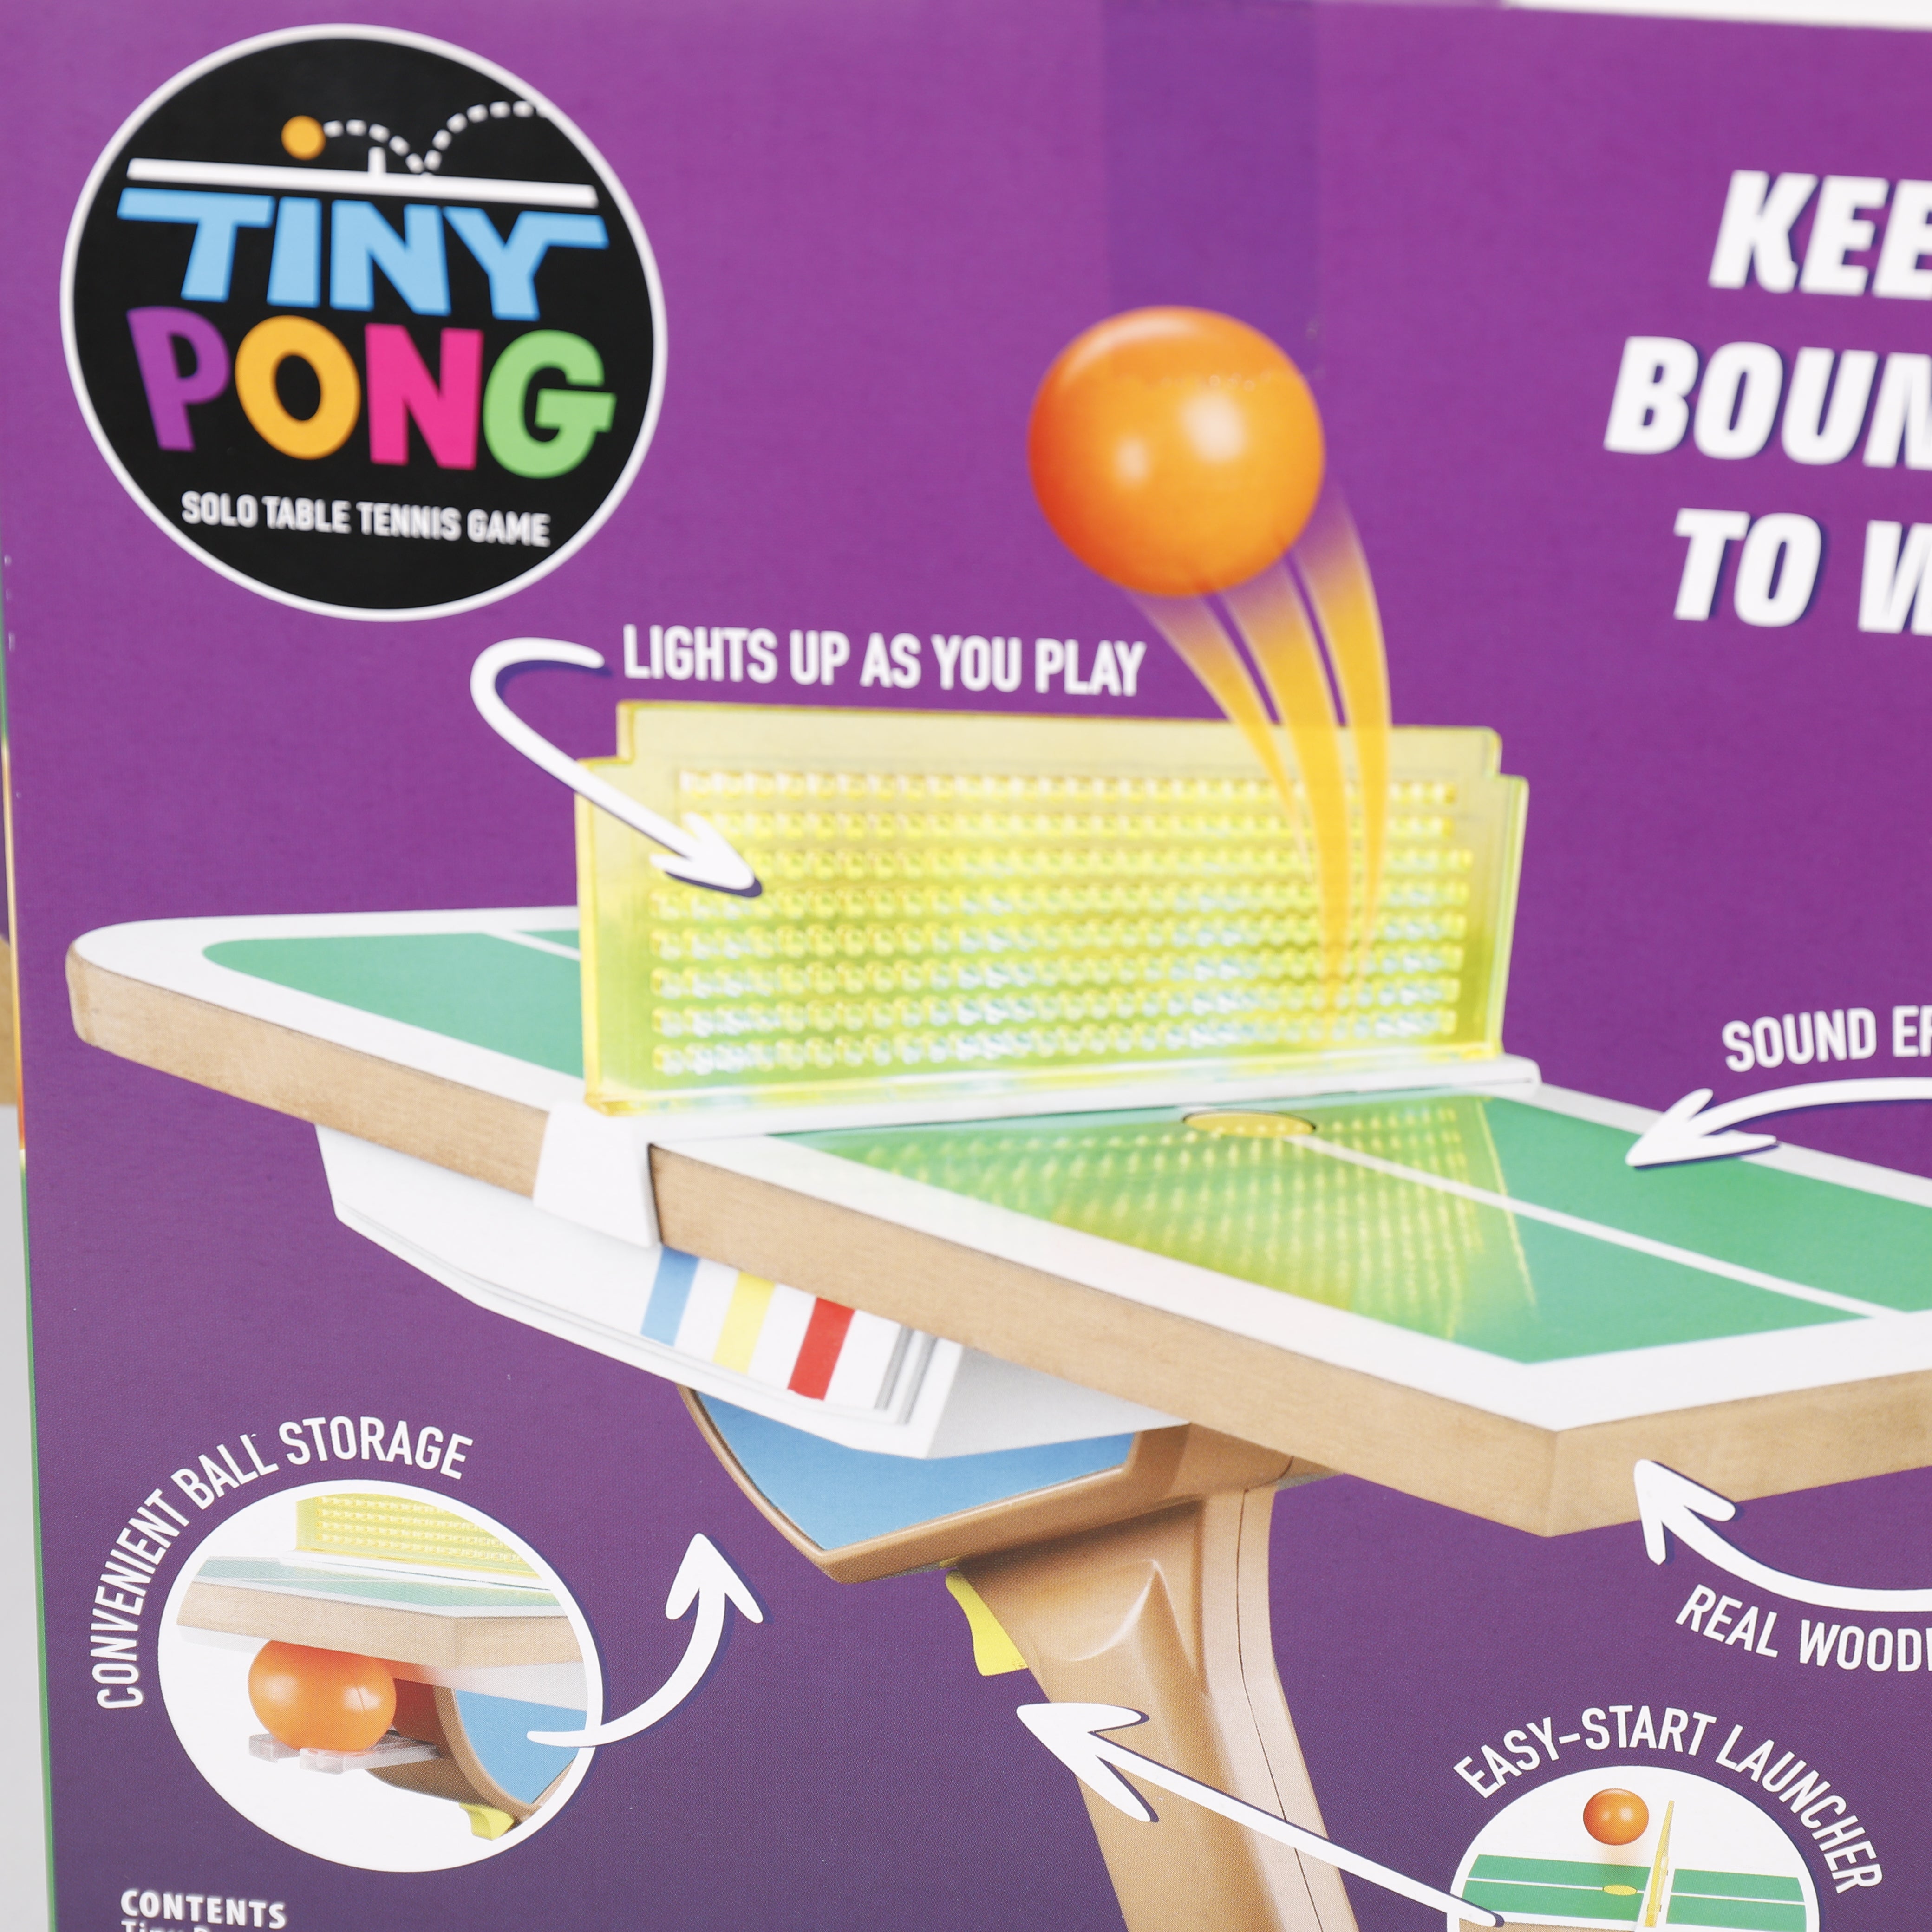 Tiny Pong, Solo Elektronisches Tischtennis Spiel 21x26 cm, Ab 8 Jahren, Hasbro.